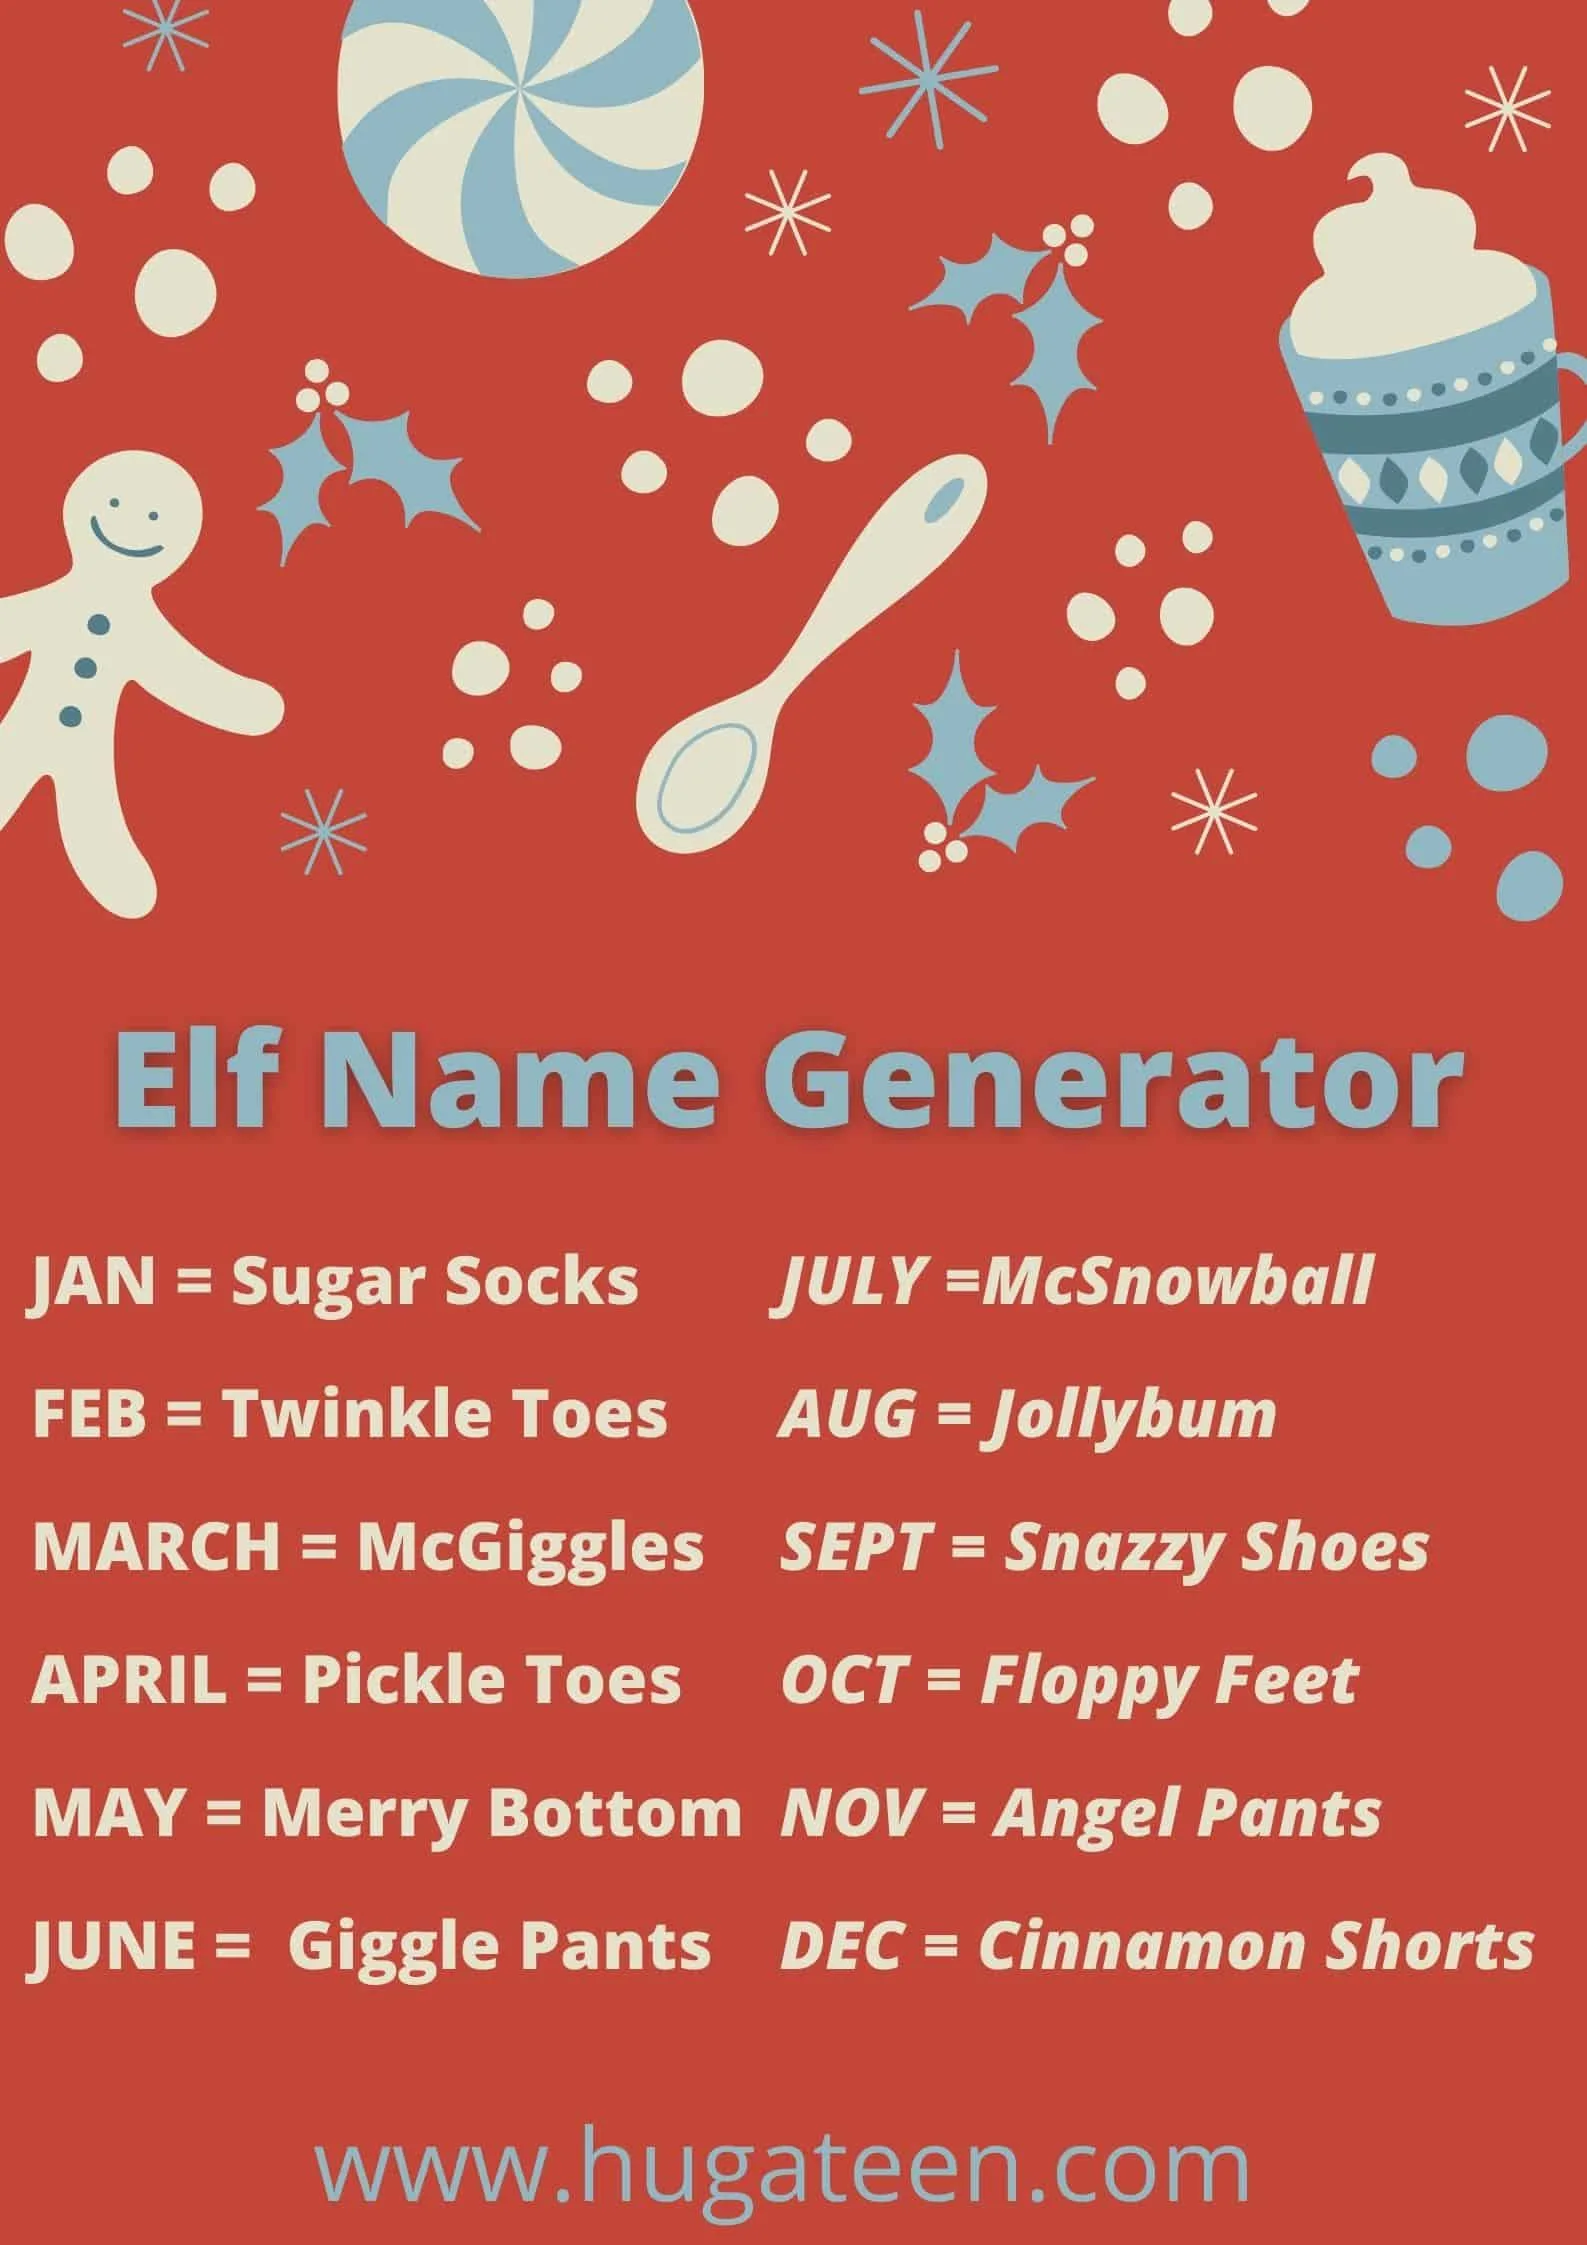 Elf Name Generator_2